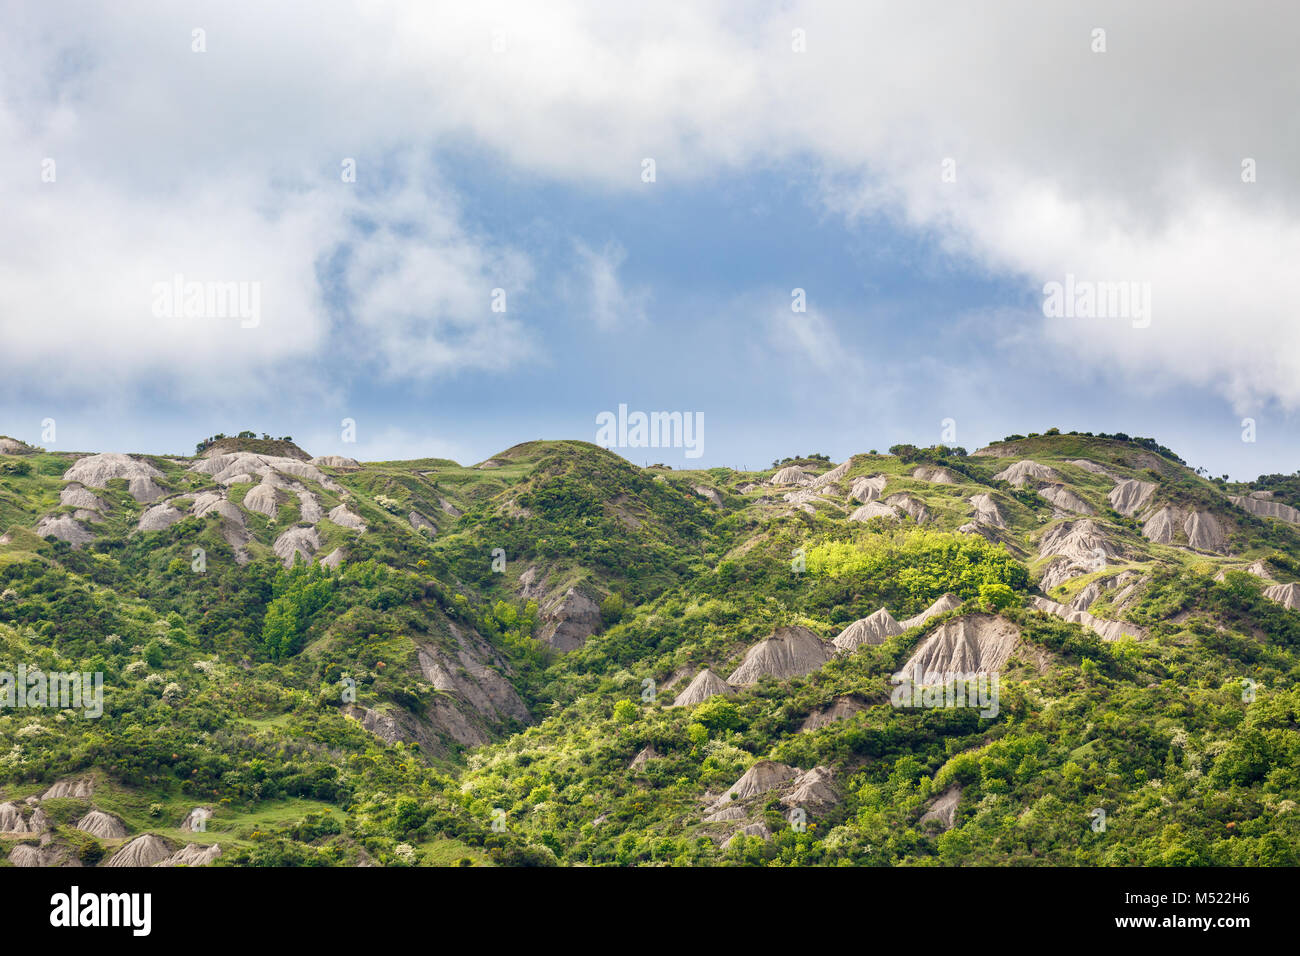 Ravine with eroding mountains Stock Photo